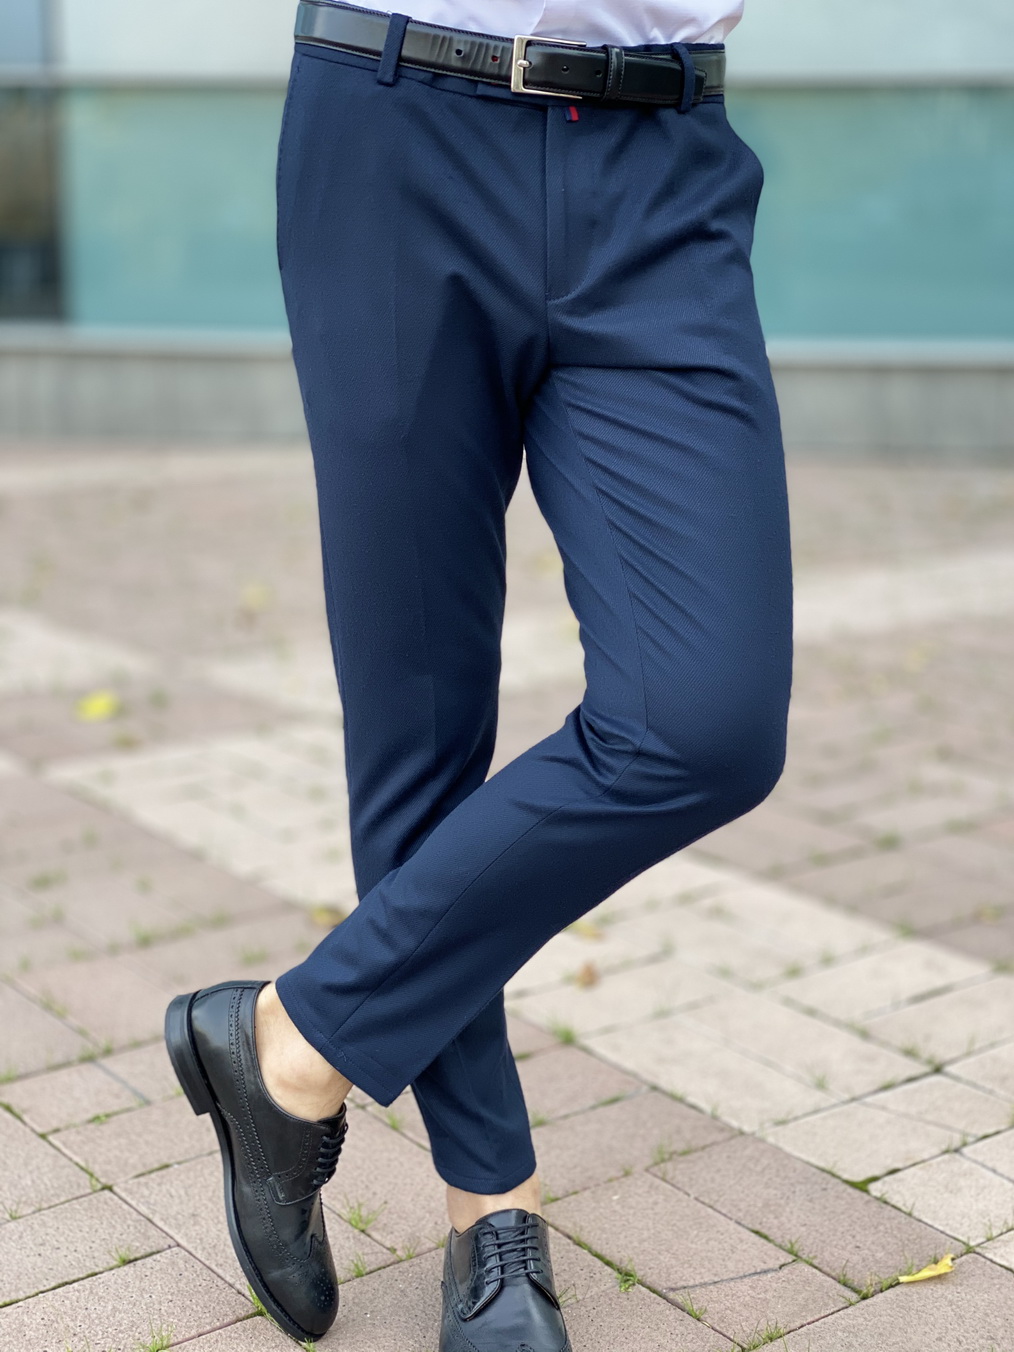 Приталенные синие мужские брюки Арт.:2562 – купить в магазине мужскойодежды Smartcasuals